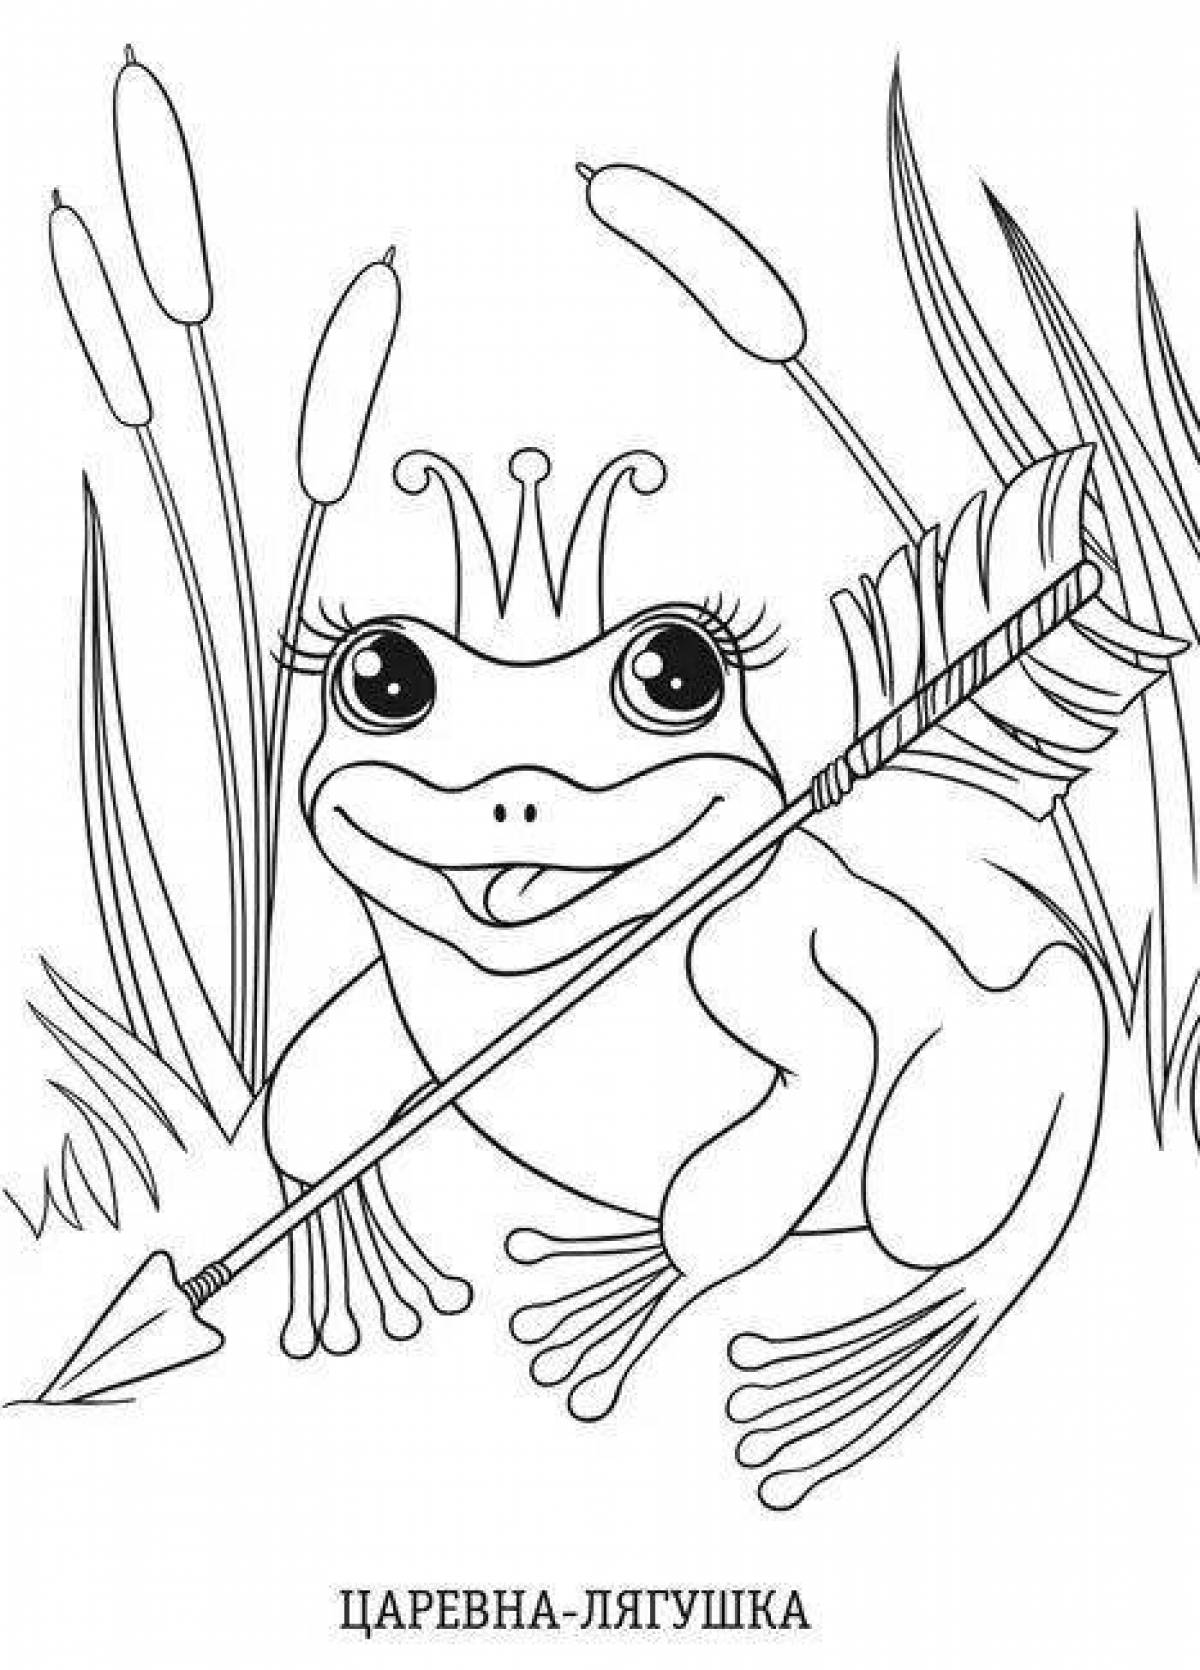 Иллюстрация к сказке Царевна лягушка 5 класс нарисовать